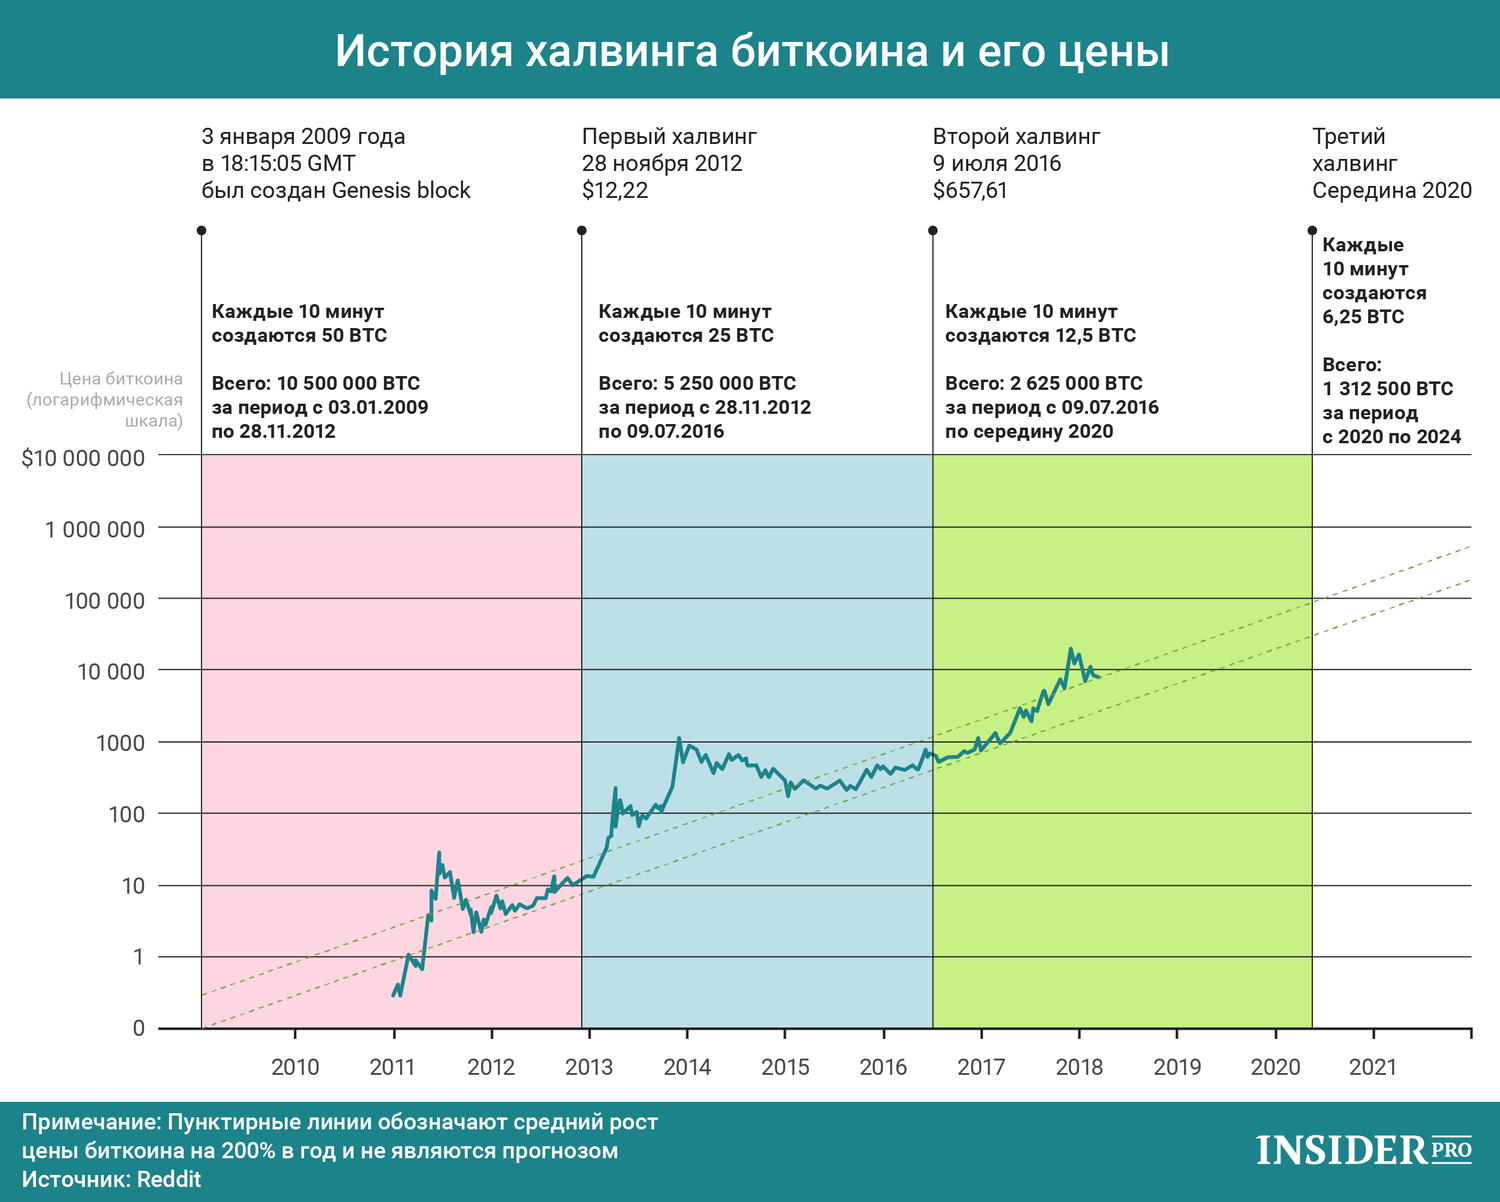 Халвинг биткоина даты и график обмен валюты русские на белорусские рубли